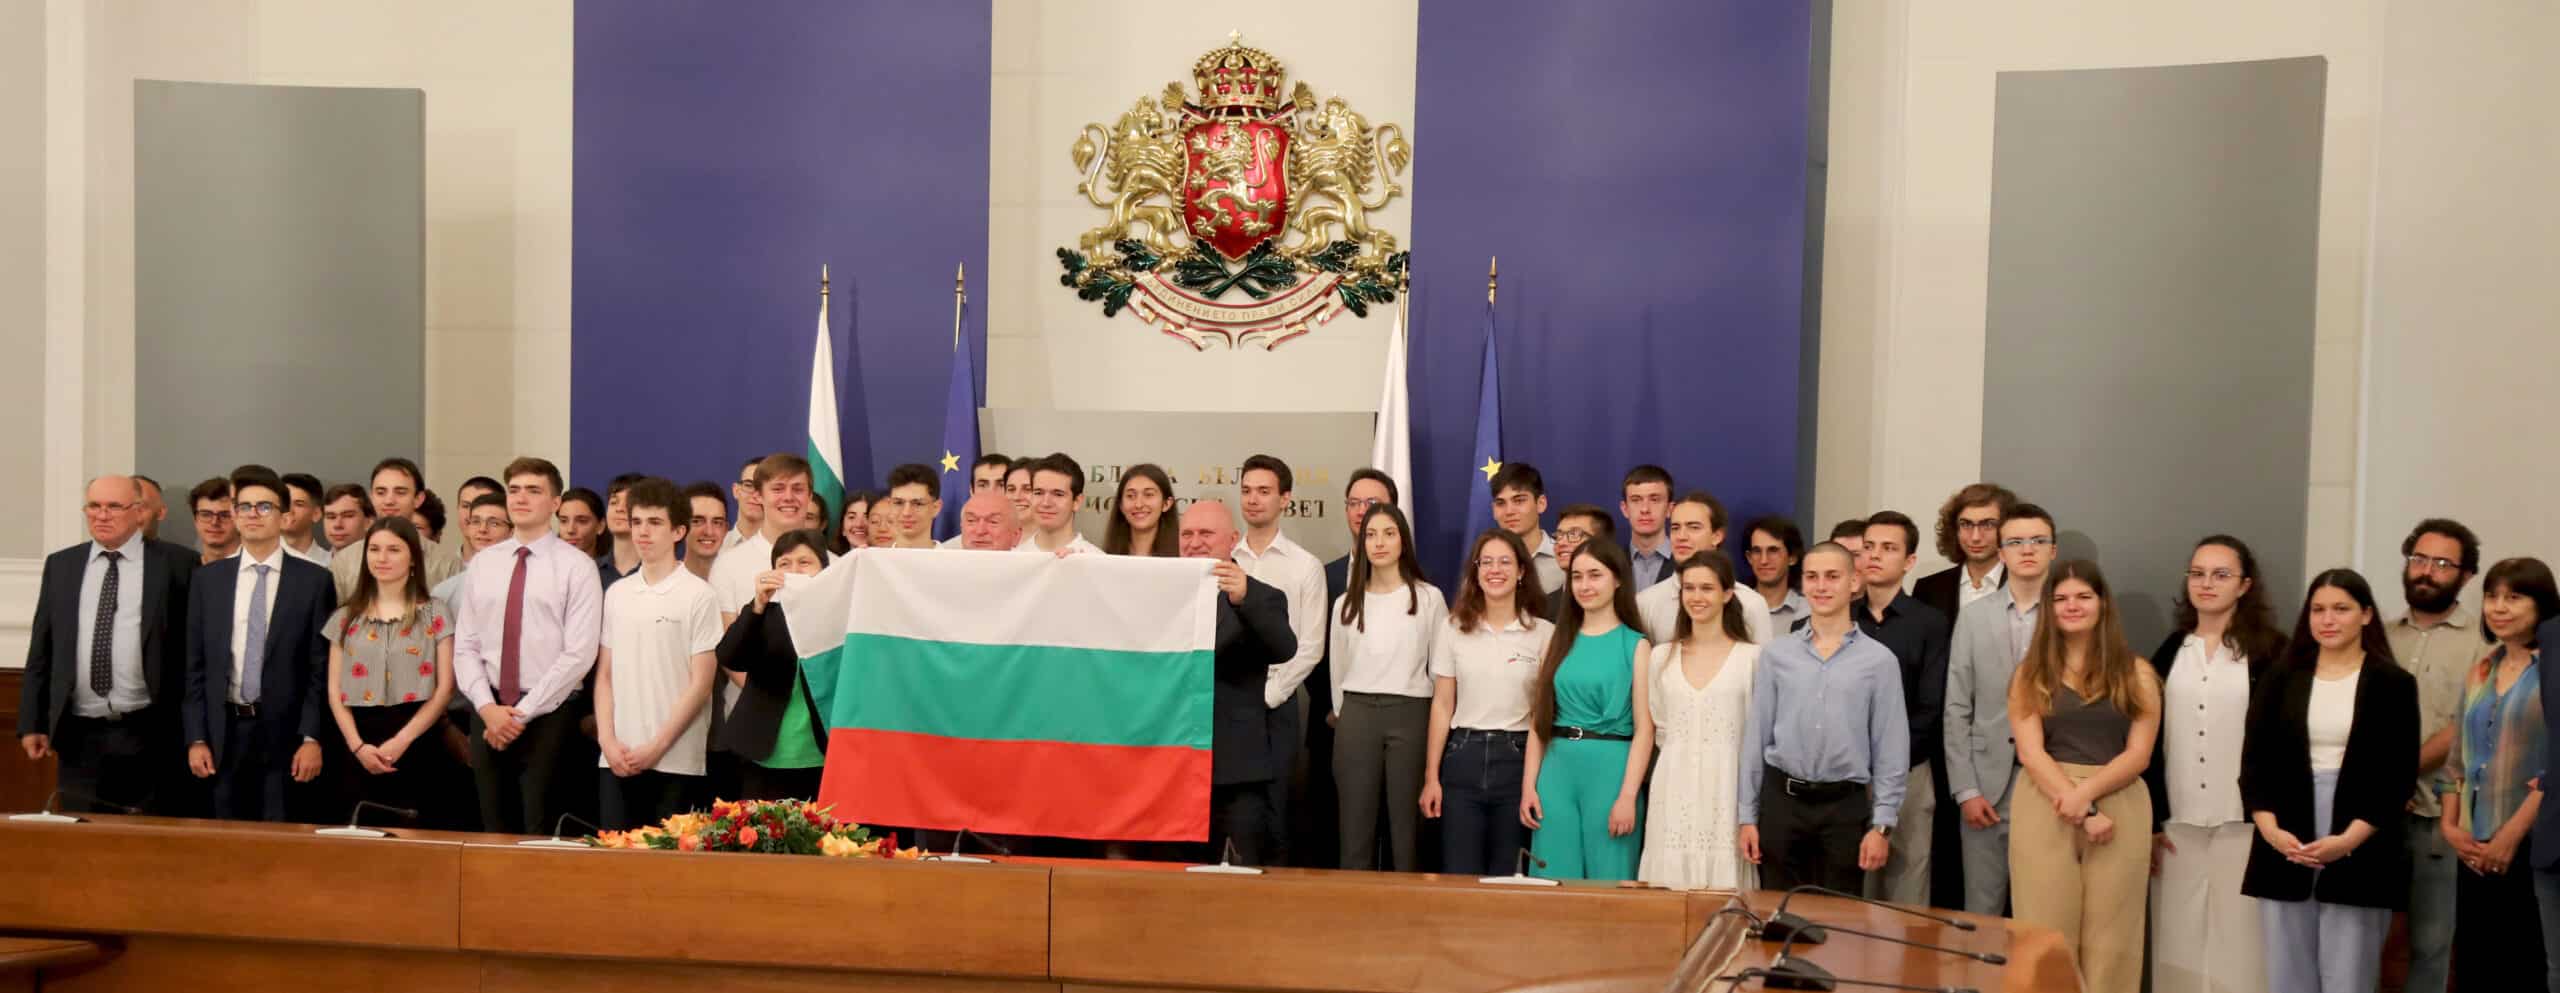 Вие сте гордост за България Надявам се в този глобален